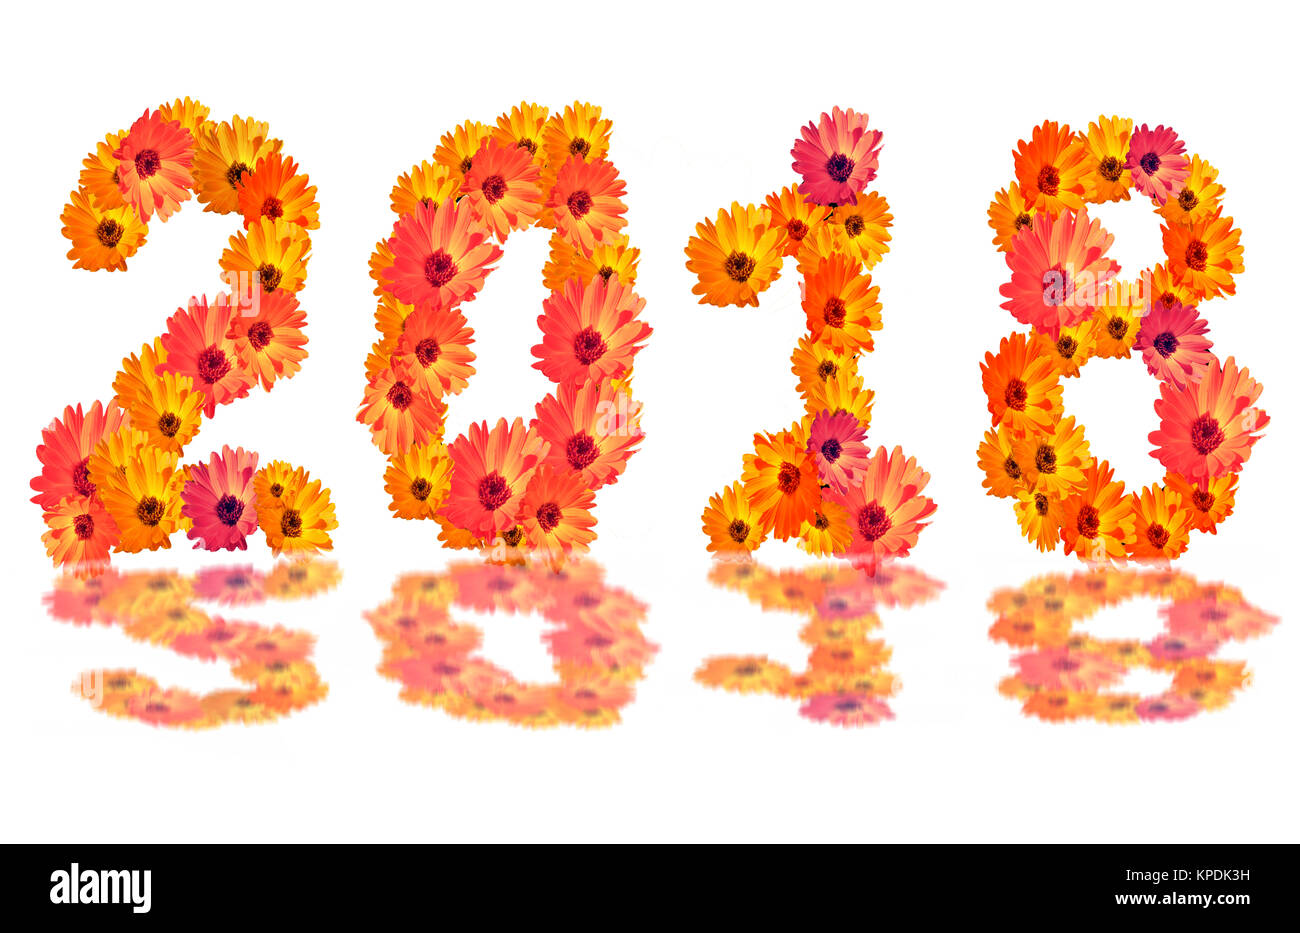 2018 nombre de fleurs,2018 changement représente la nouvelle année 2018, le chiffre de 2018 fleurs, isolé sur fond blanc Banque D'Images